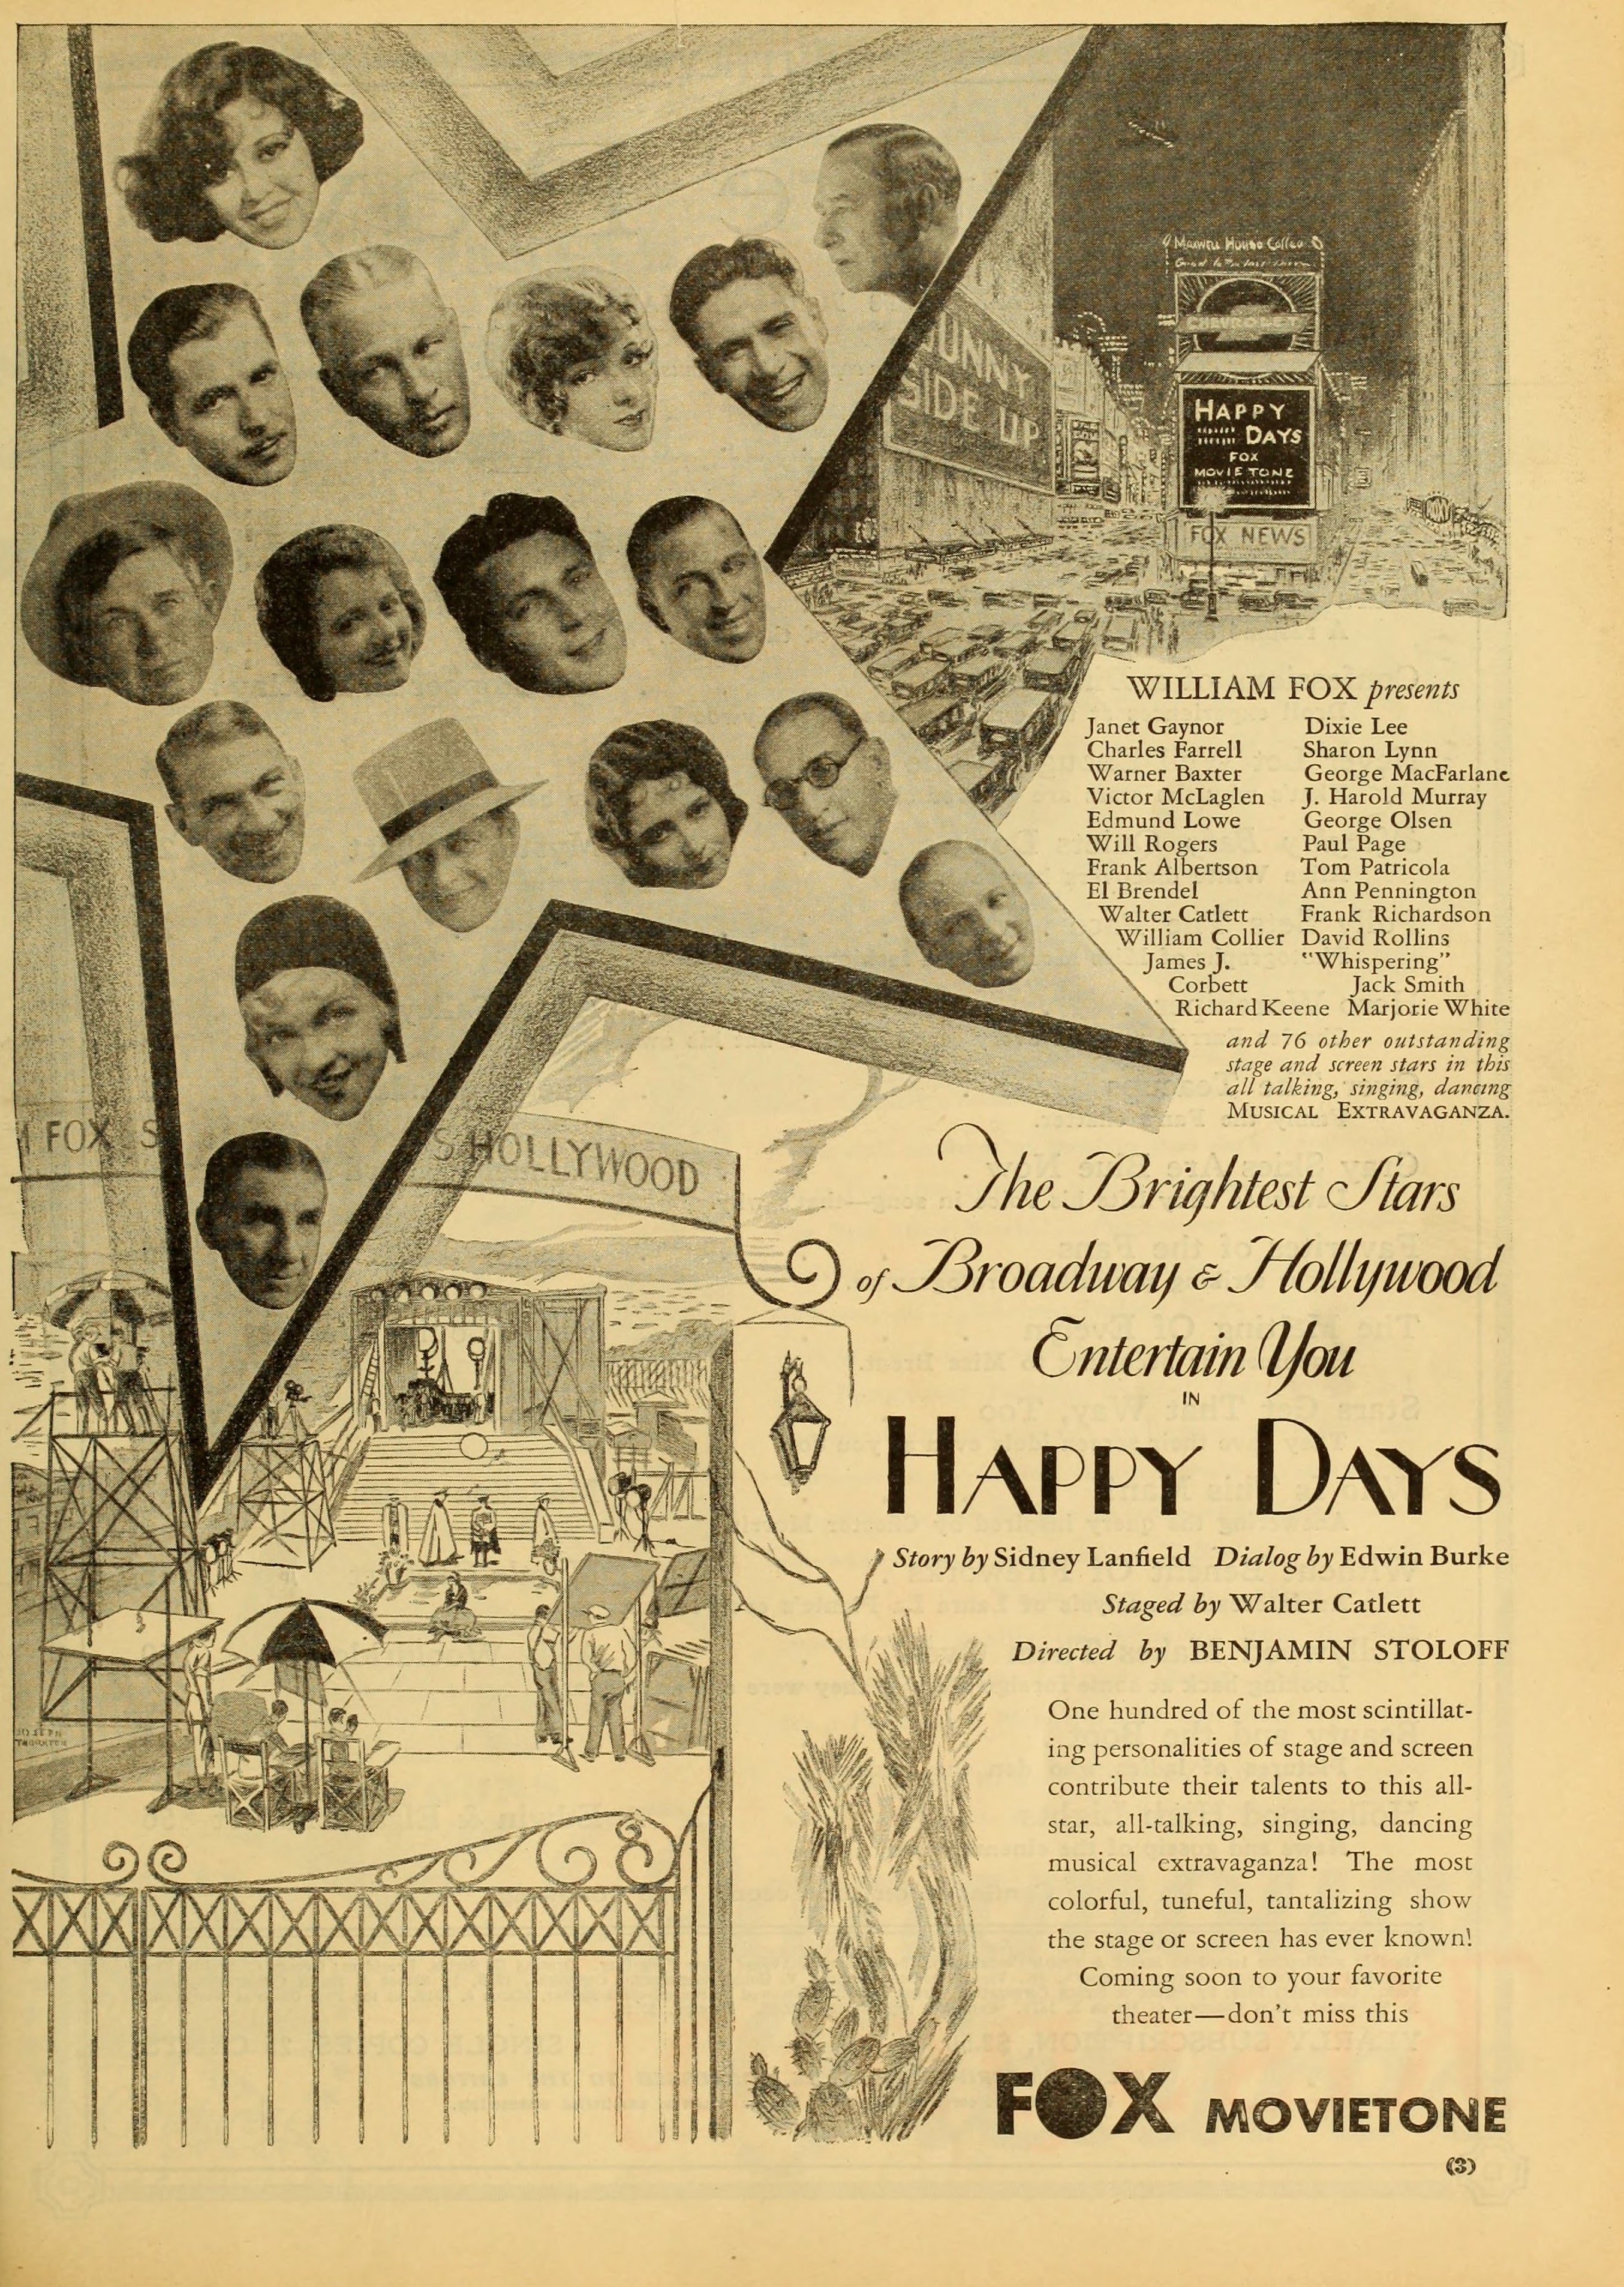 Happy Days (1929) | www.vintoz.com